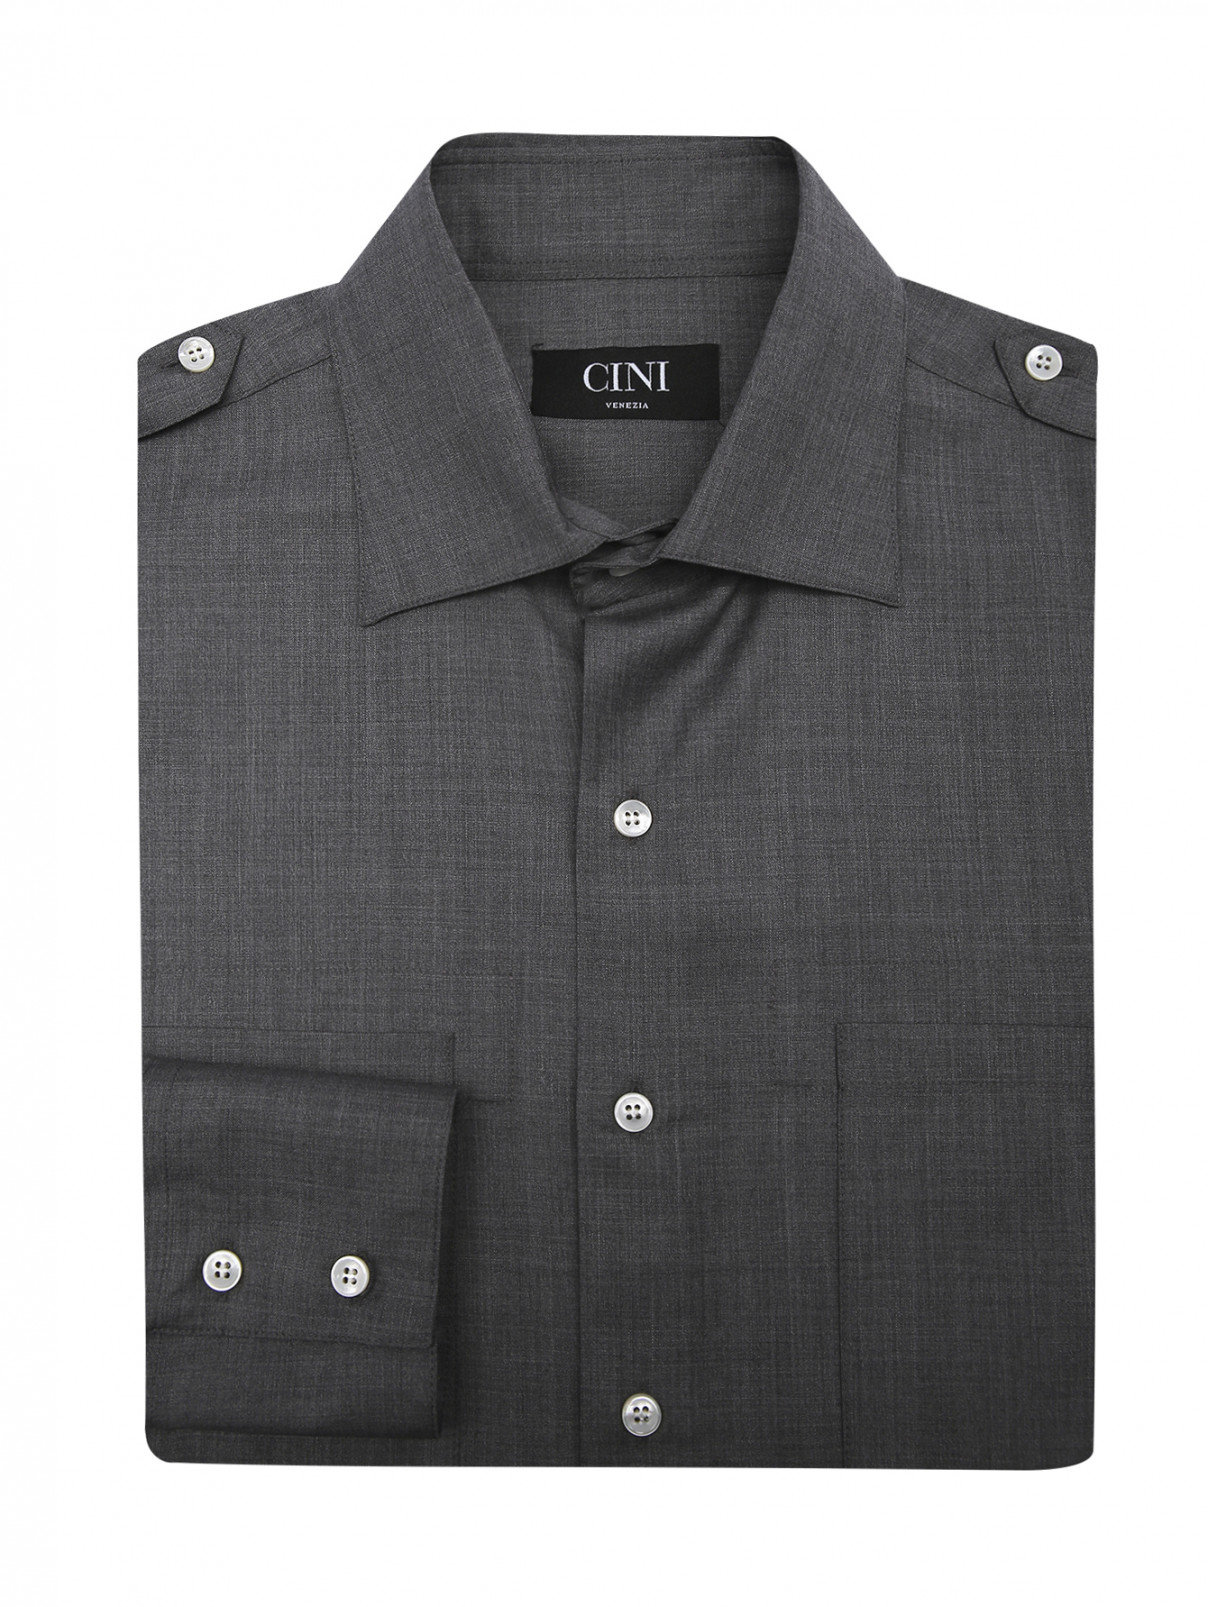 Рубашка из шерсти с накладными карманами Cini Venezia  –  Общий вид  – Цвет:  Серый